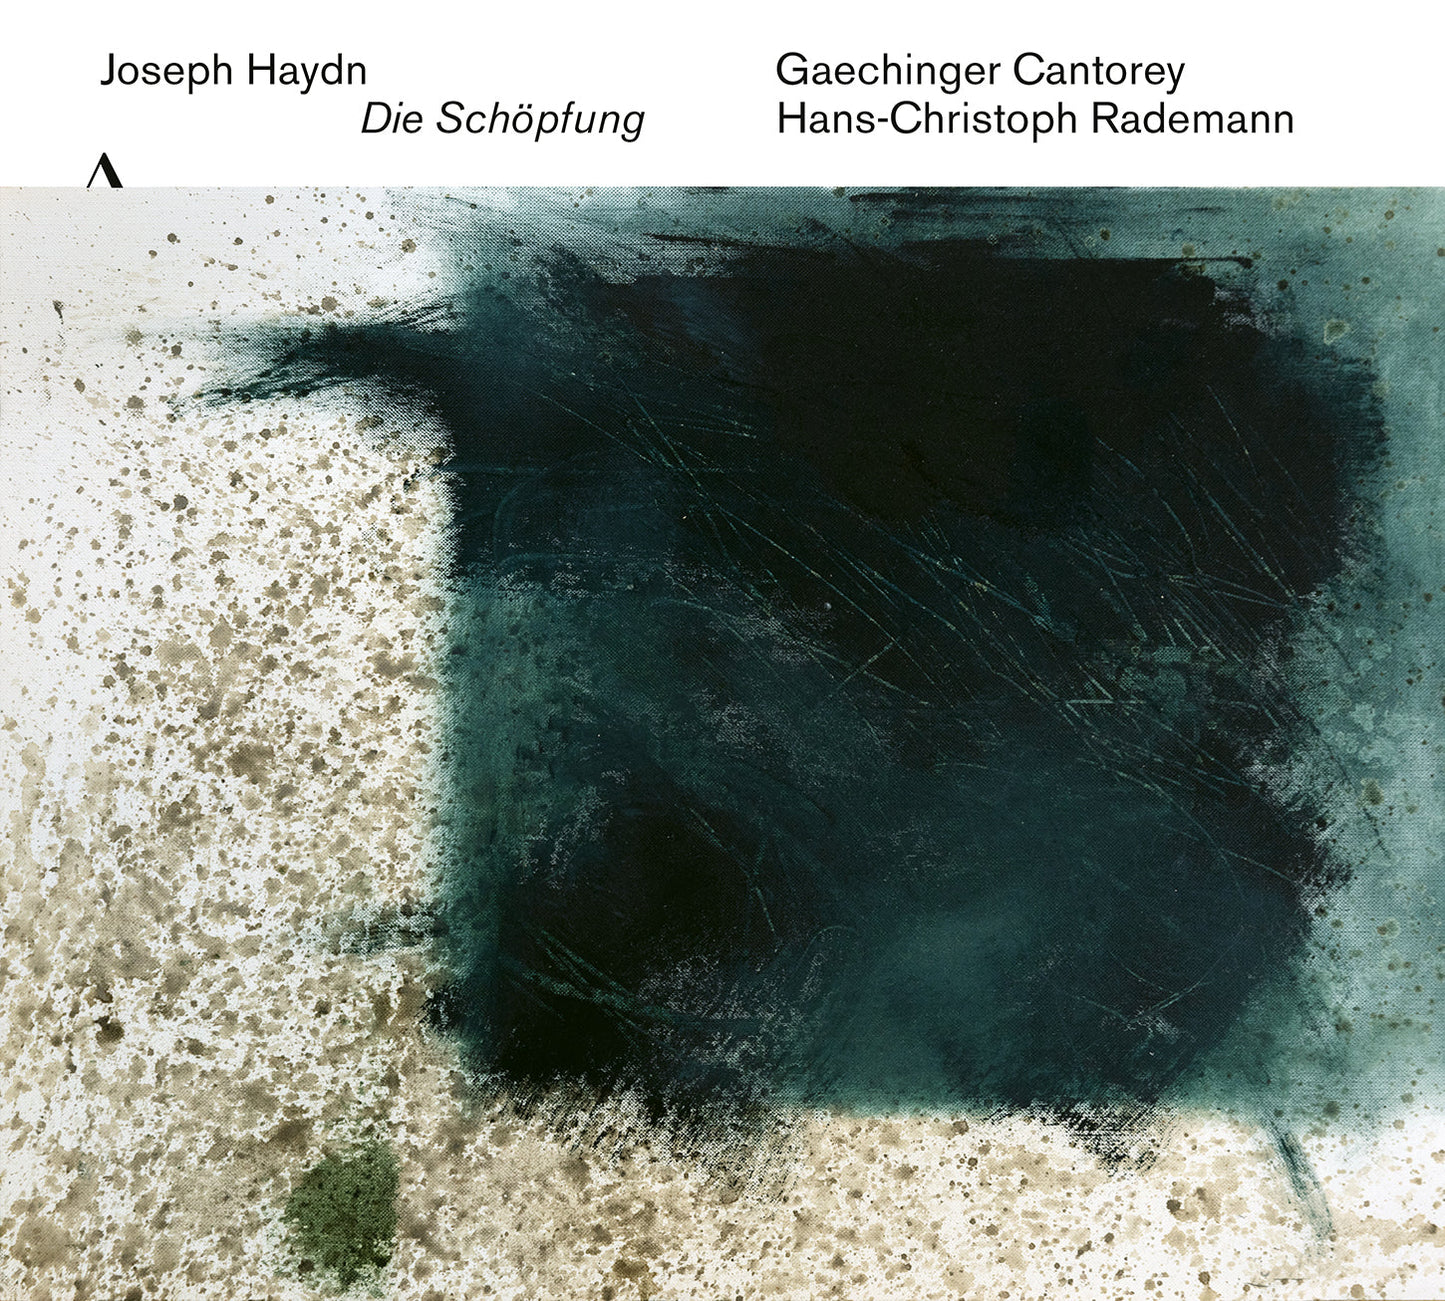 J. Haydn: Die Schopfung